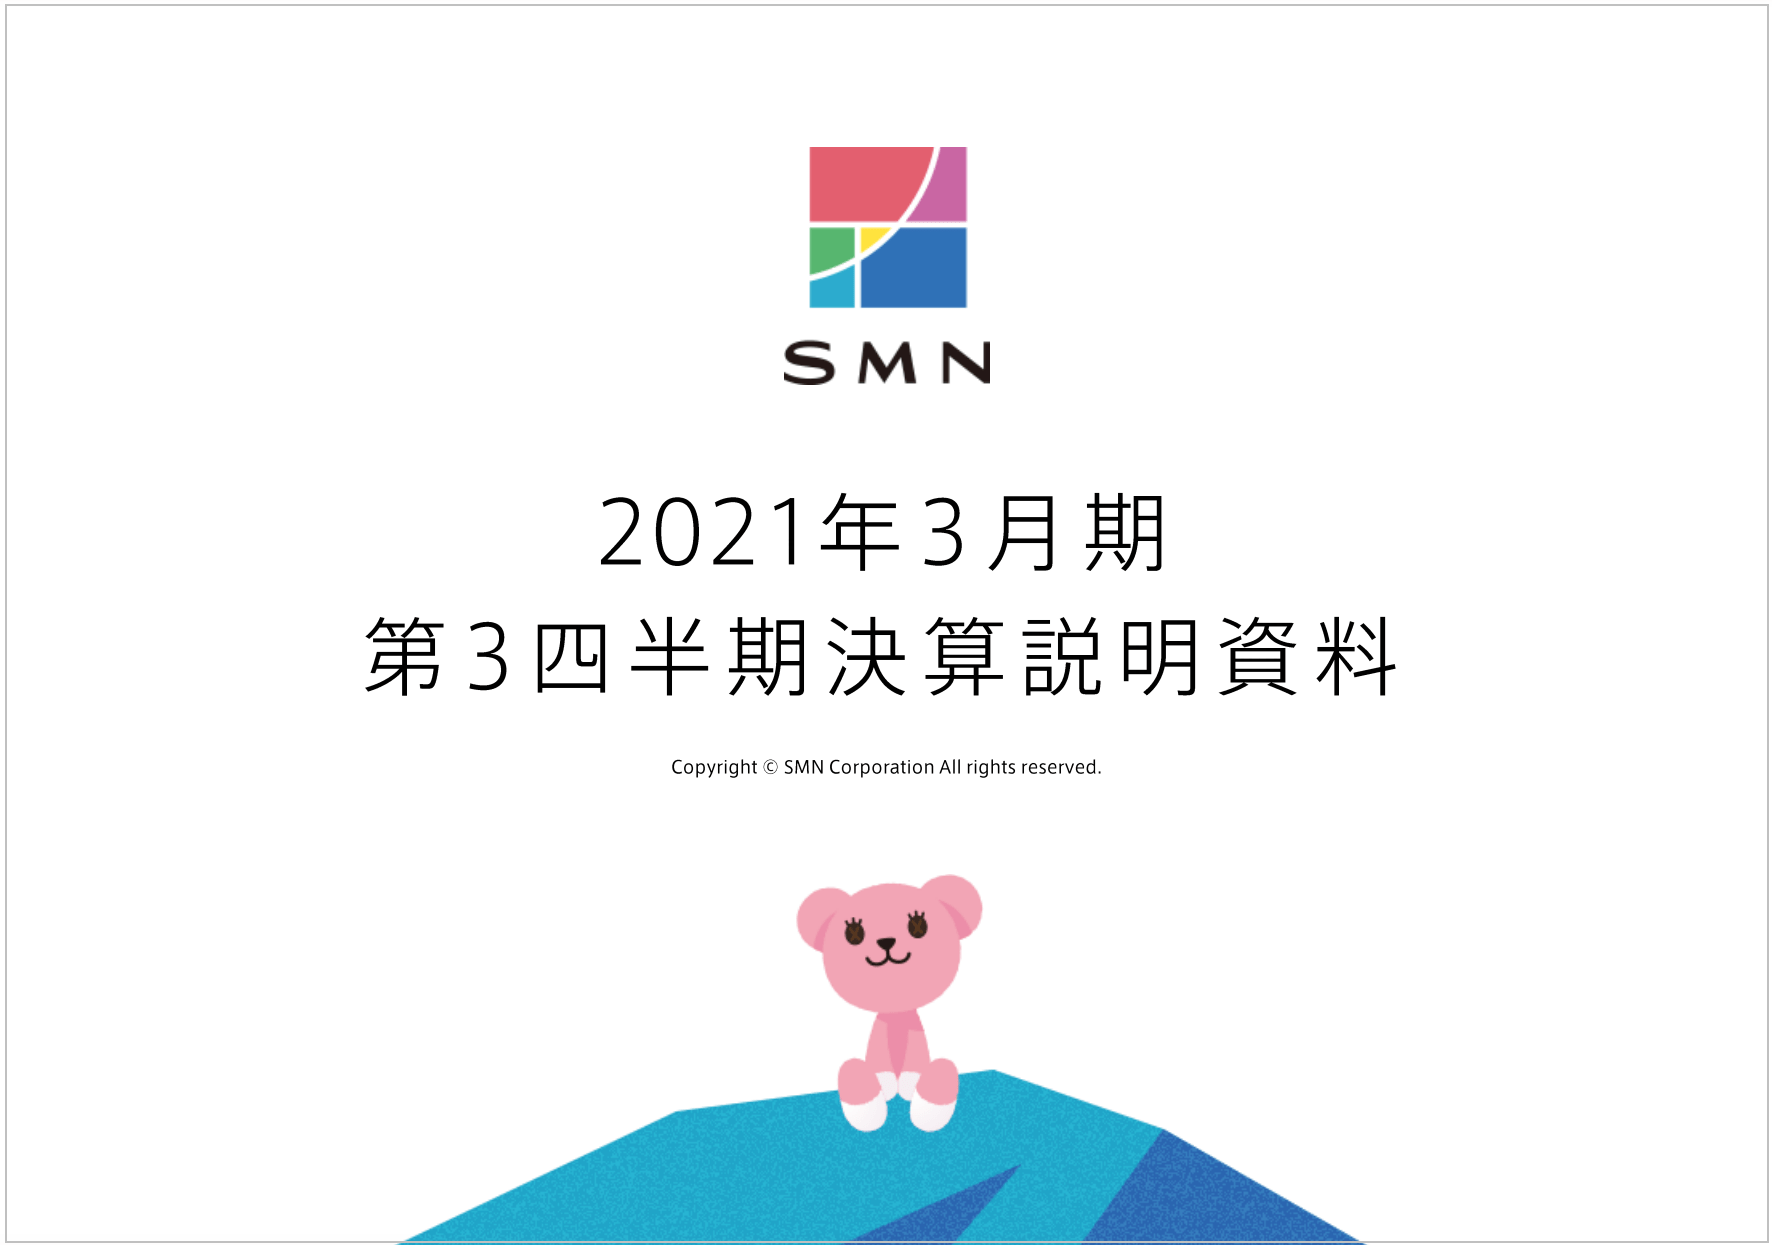 SMN株式会社の決算説明会資料の解説【デザインの特徴】1